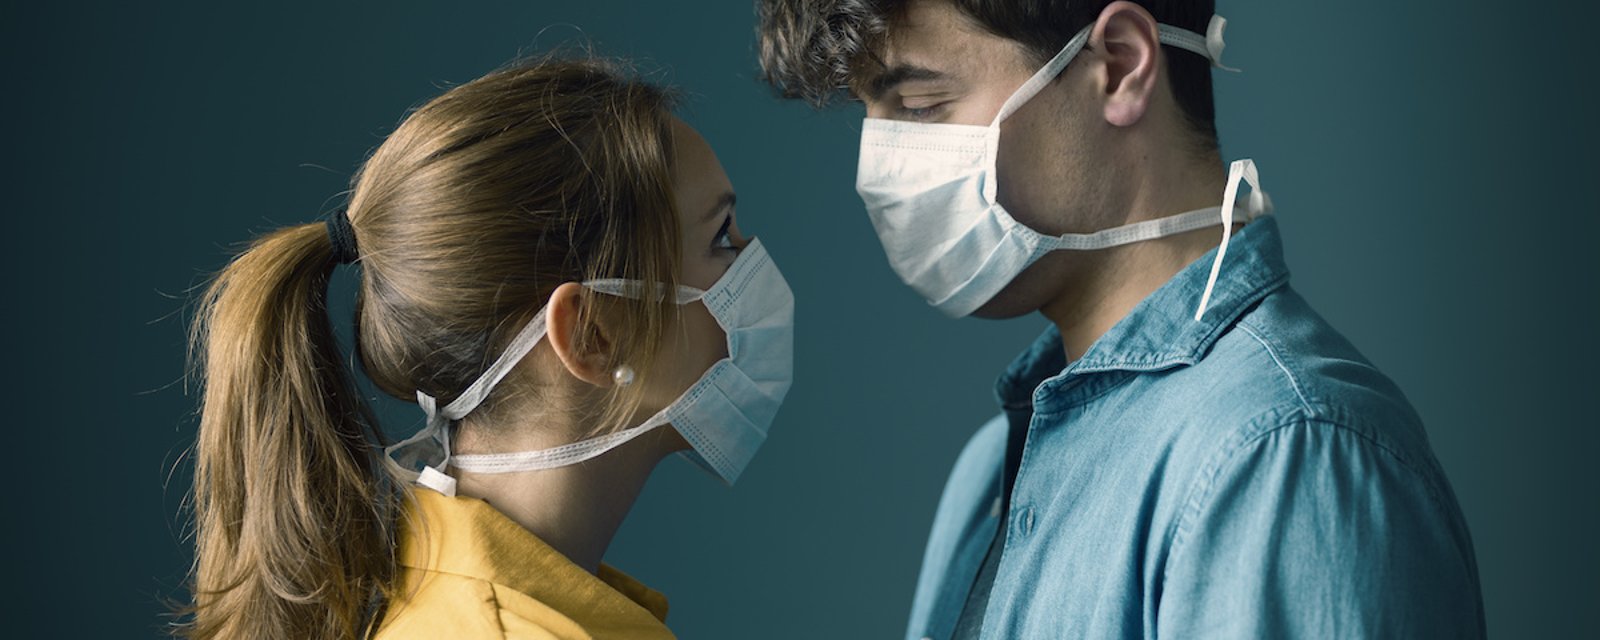 Prendre soin de son couple en temps de pandémie: 6 conseils 